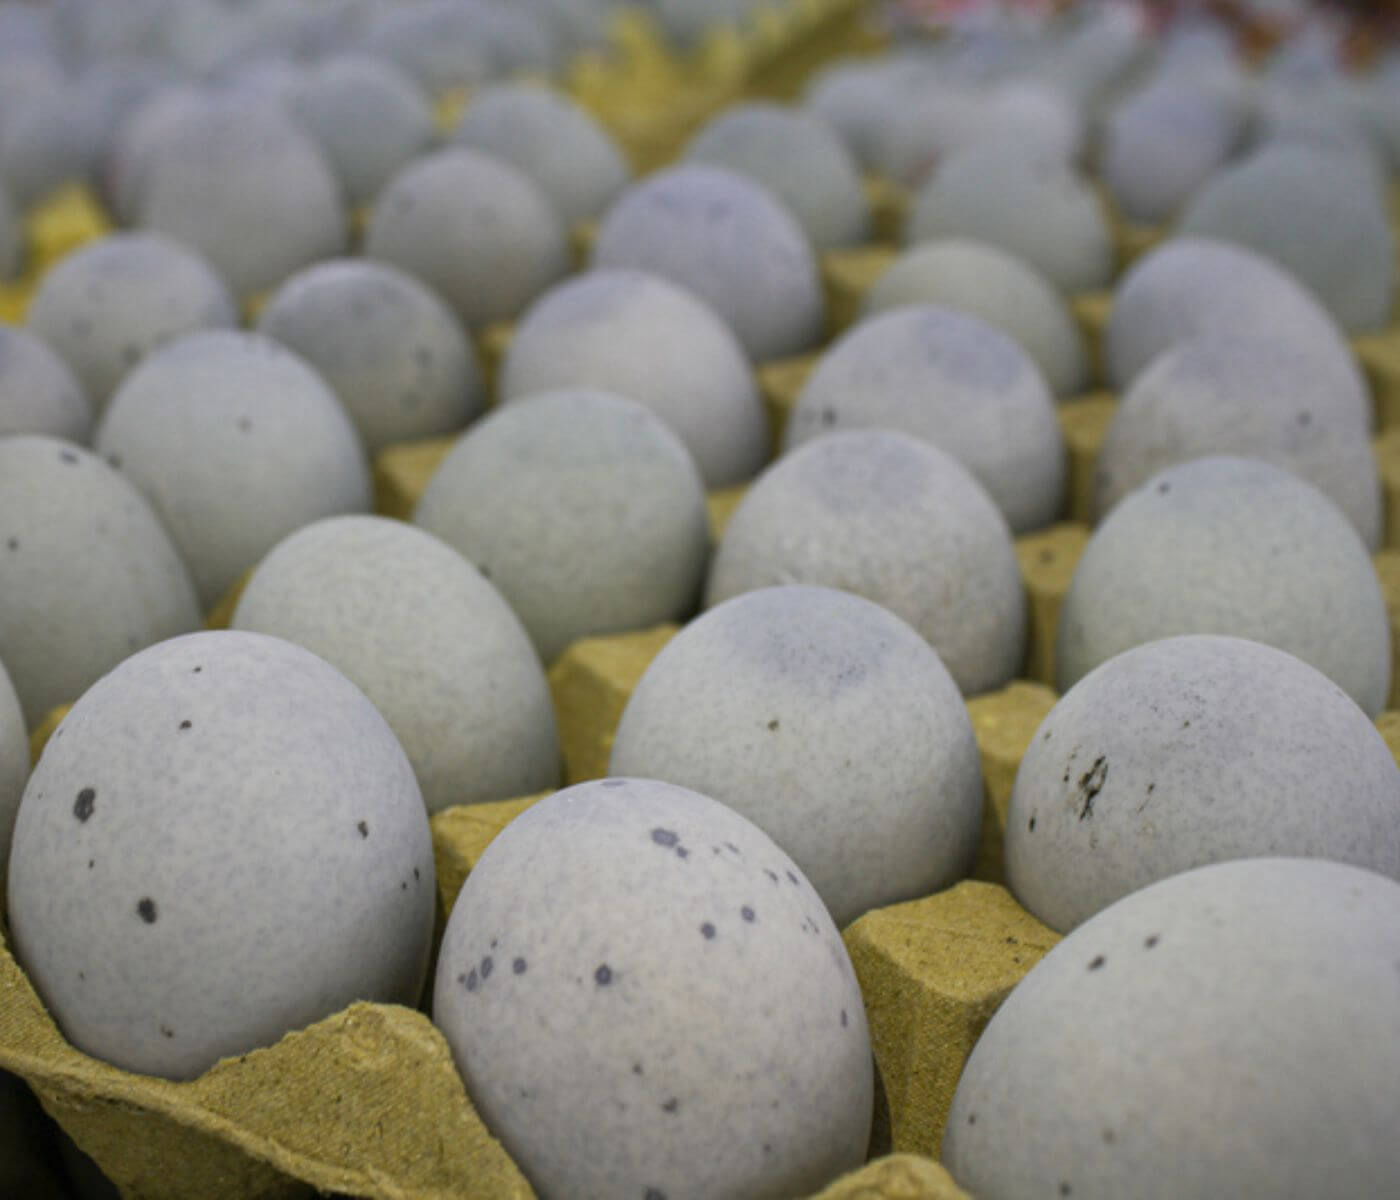 أسعار بيض البط في تايوان ترتفع والسبب نقص في بيض...